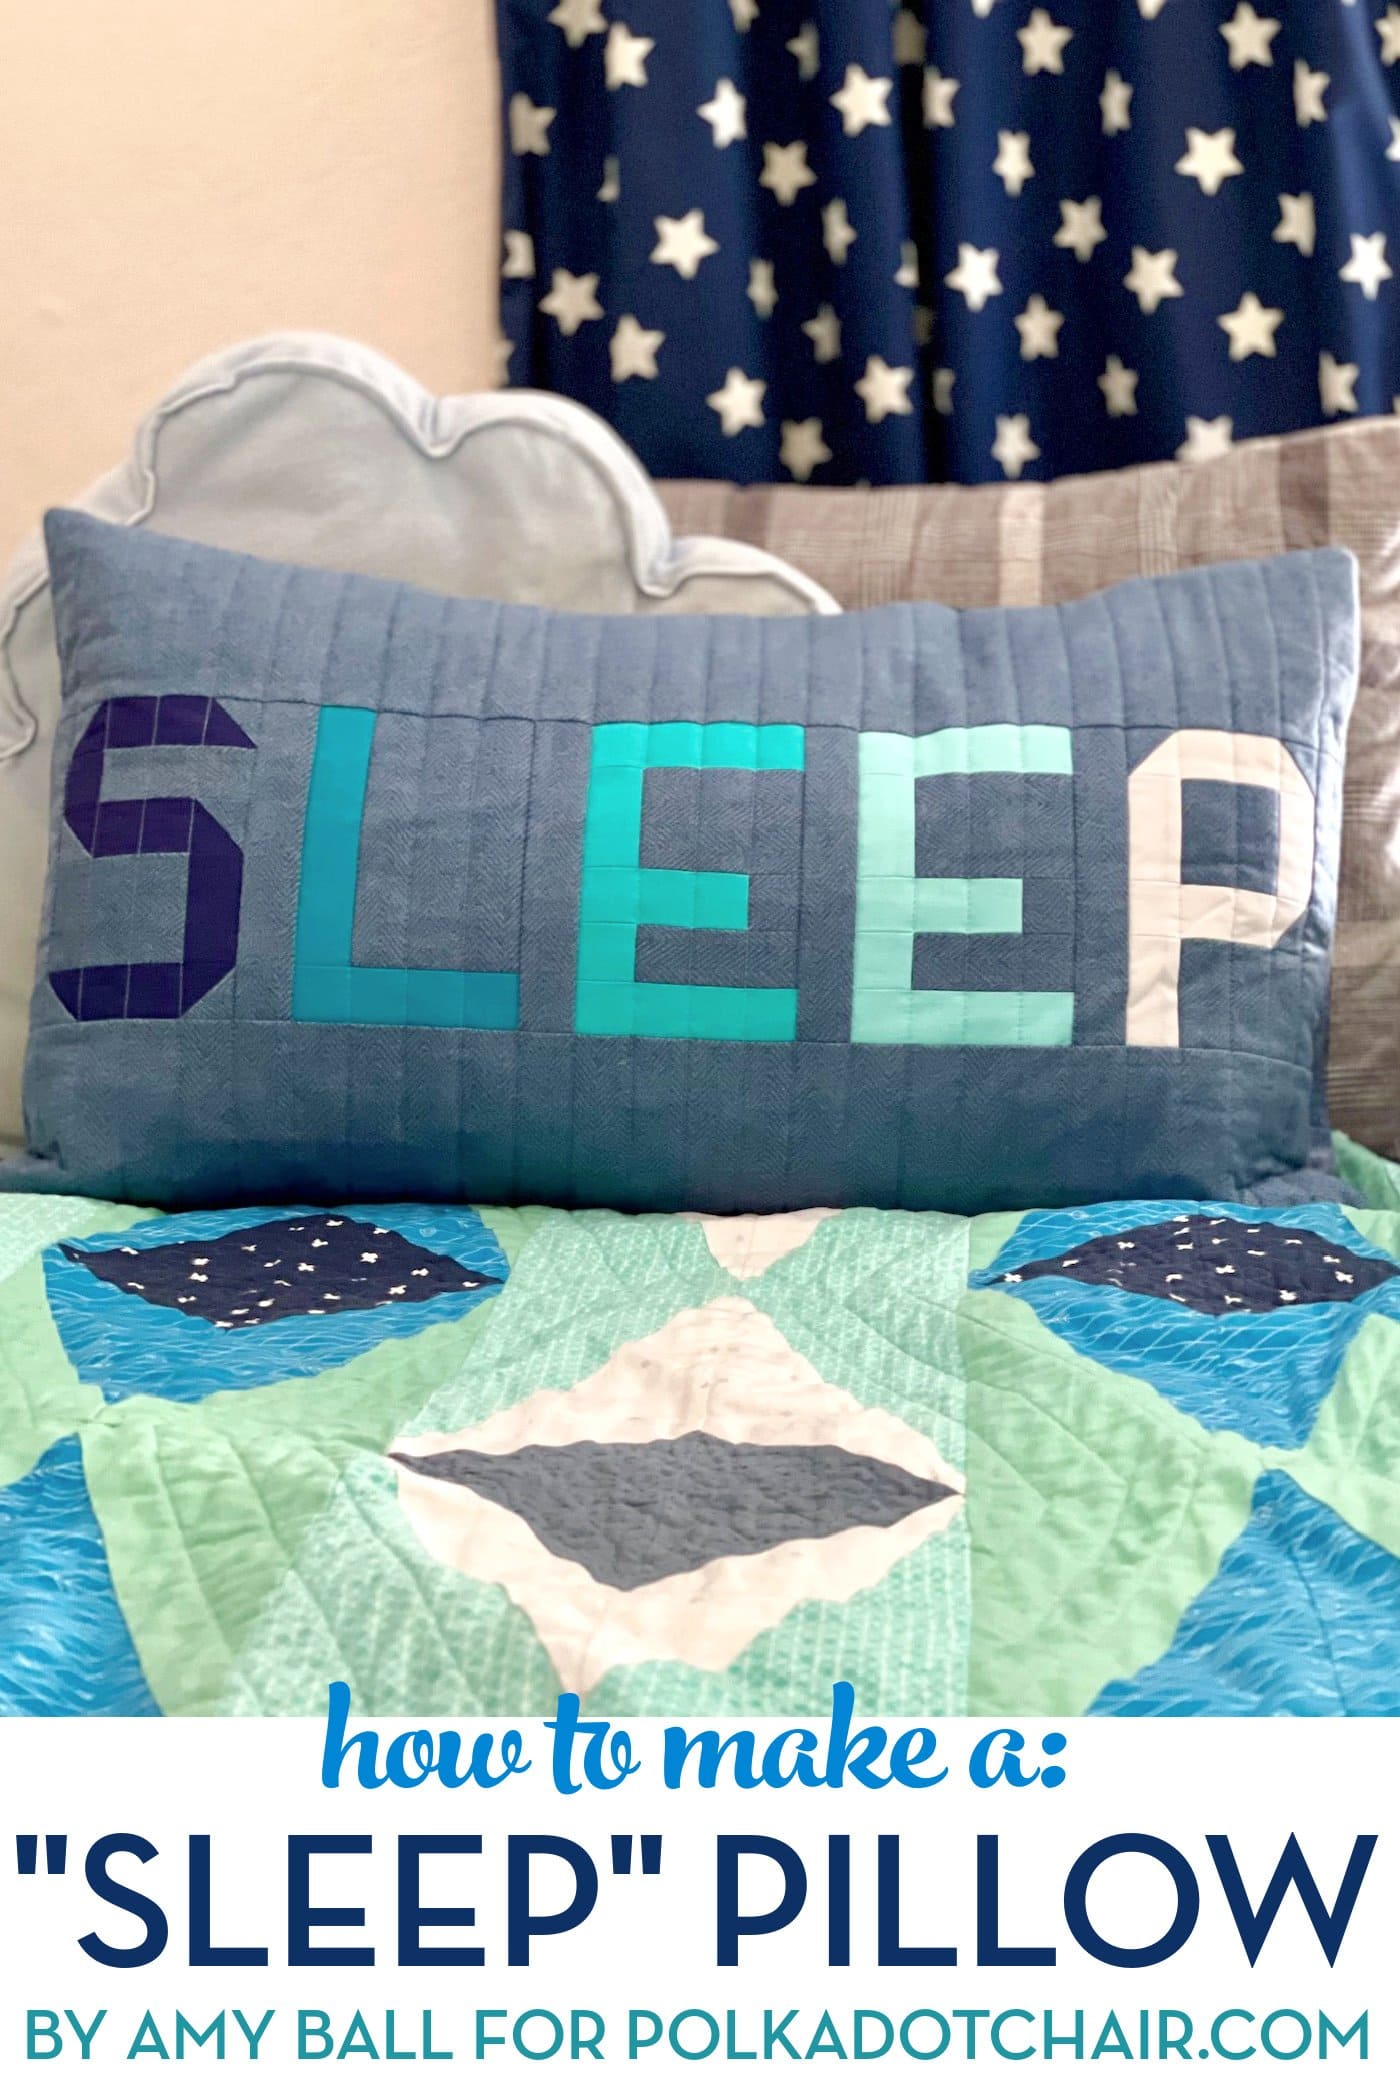 oreiller patchwork bleu et gris sur le lit avec d'autres oreillers